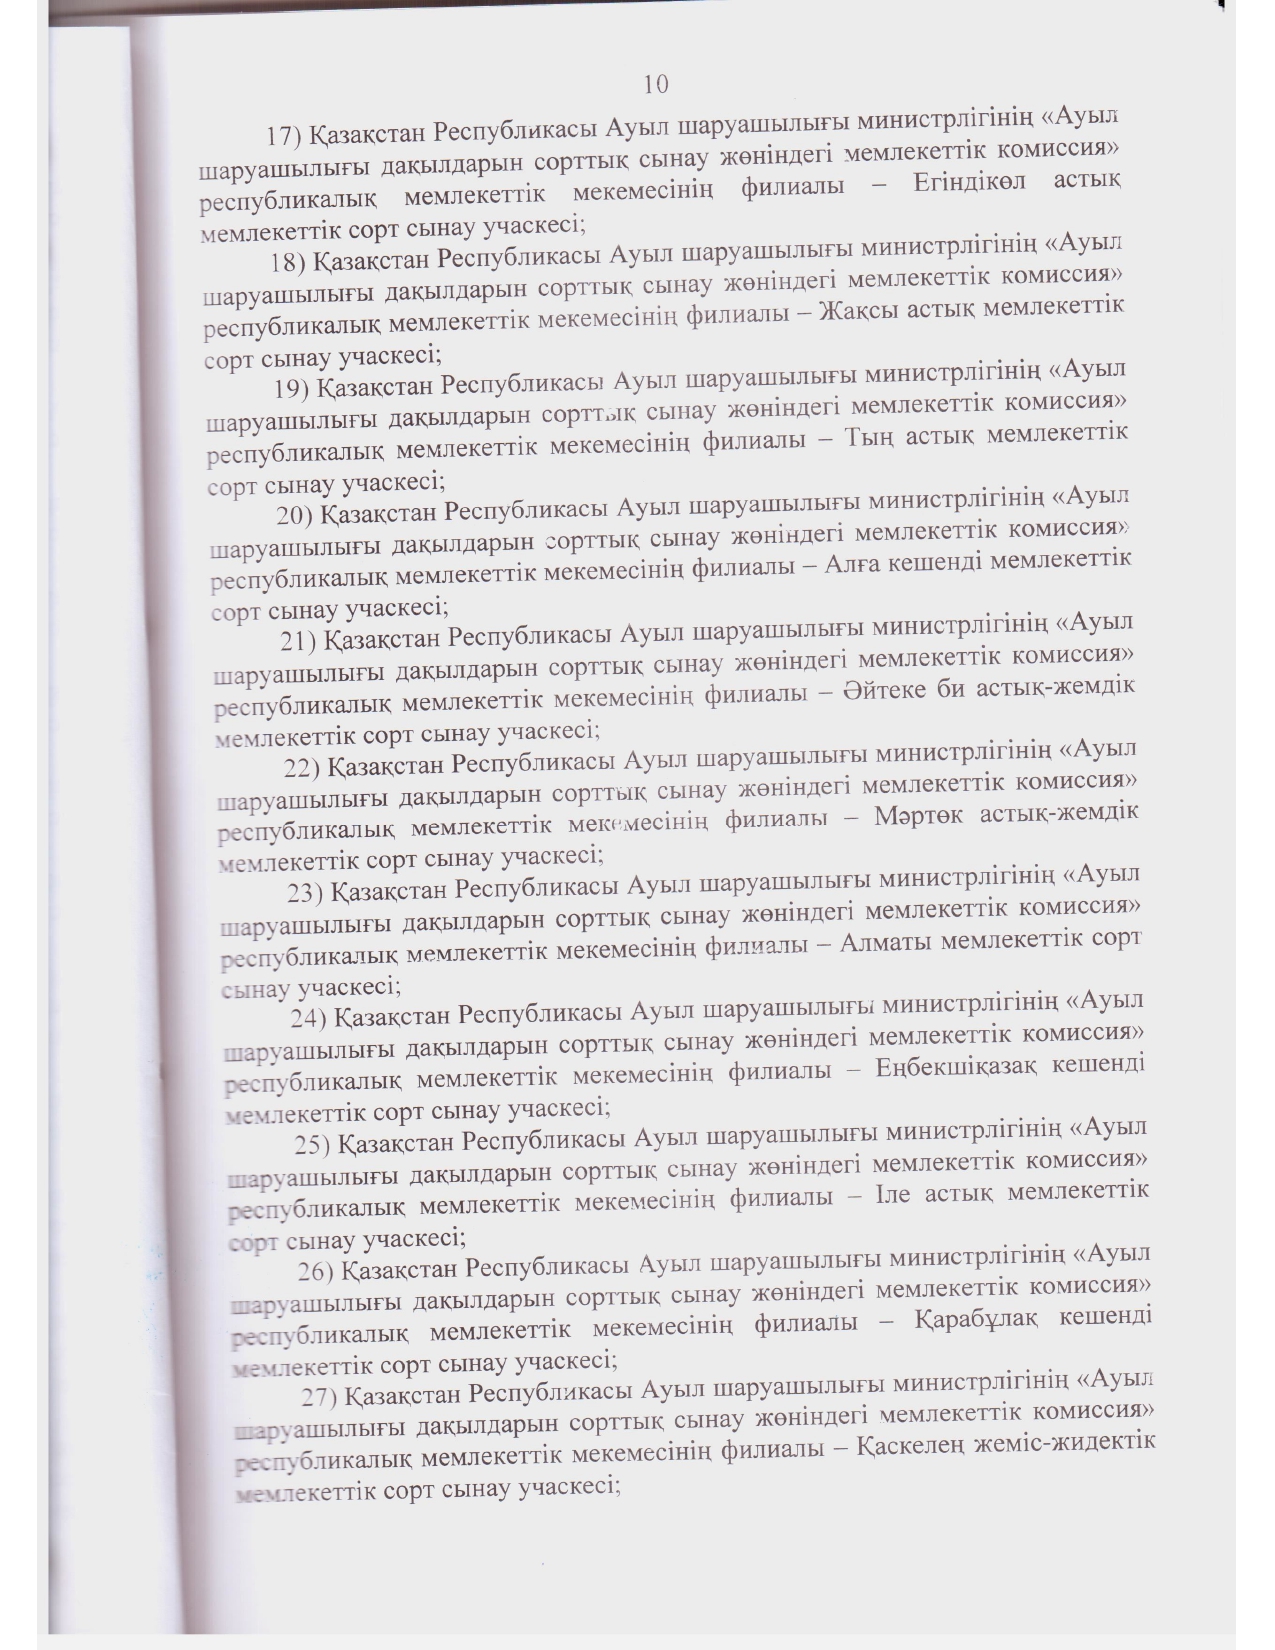 Устав ГосКомиссии_2021 год зарегистрирован_page-0009